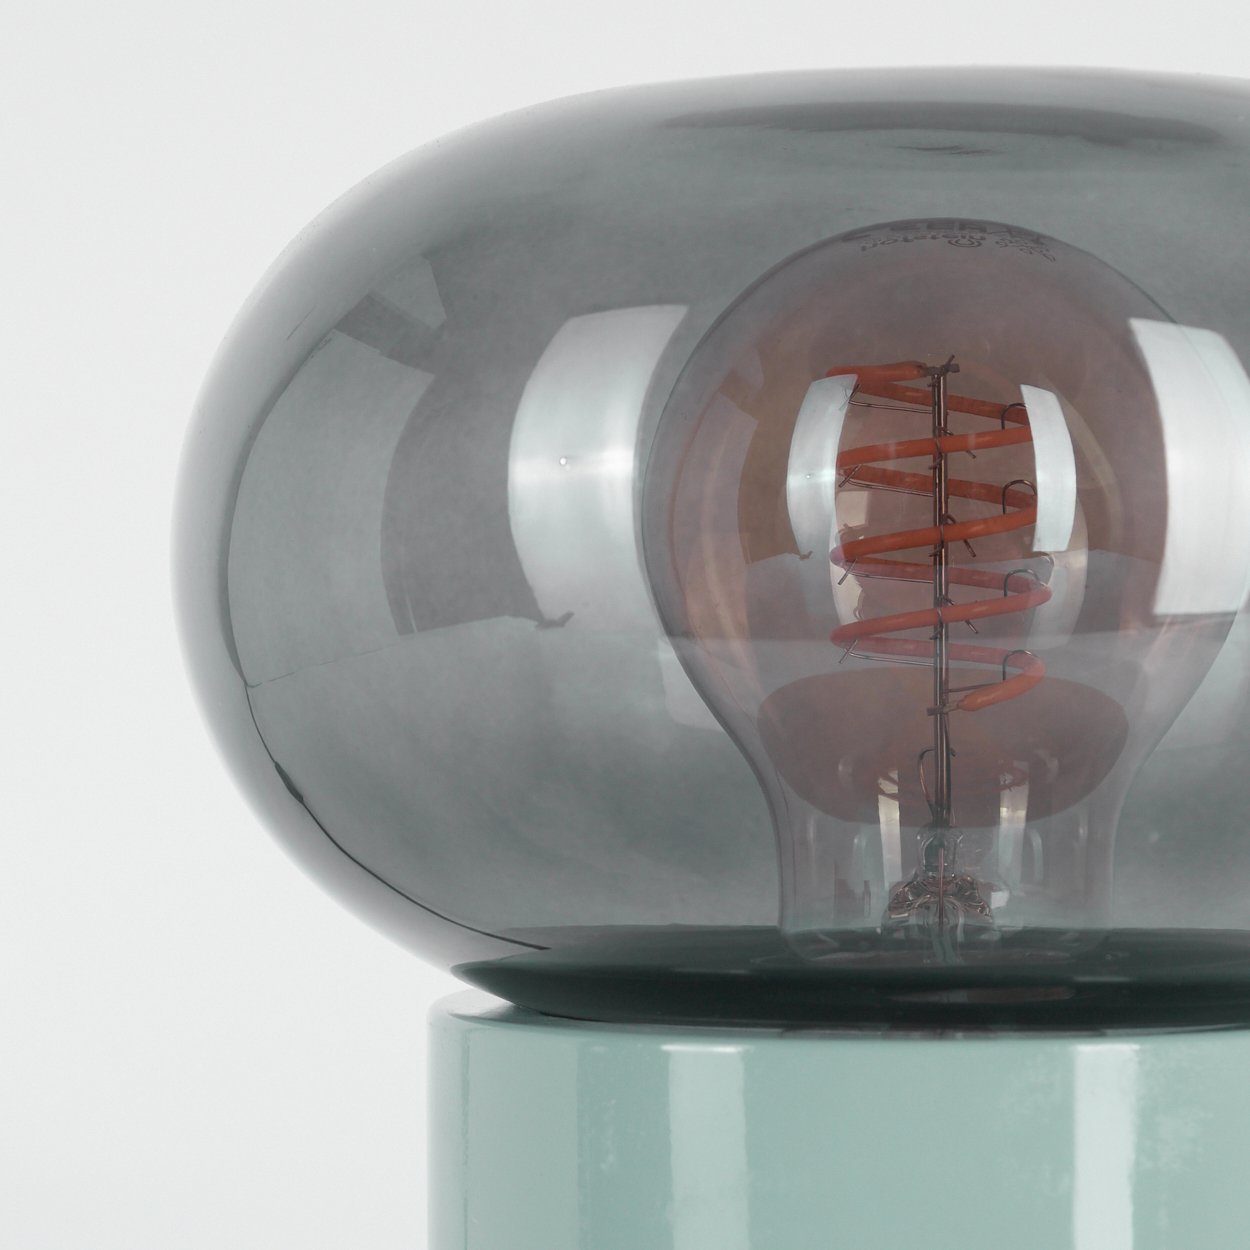 x Metall/Glas hofstein moderne Leuchtmittel, aus ohne Tischlampe, Türkis/Rauchfarben, Ø 15cm, Nachttischlampe Höhe runde 1 22cm, An-/Ausschalter, E27 Tischleuchte in m.